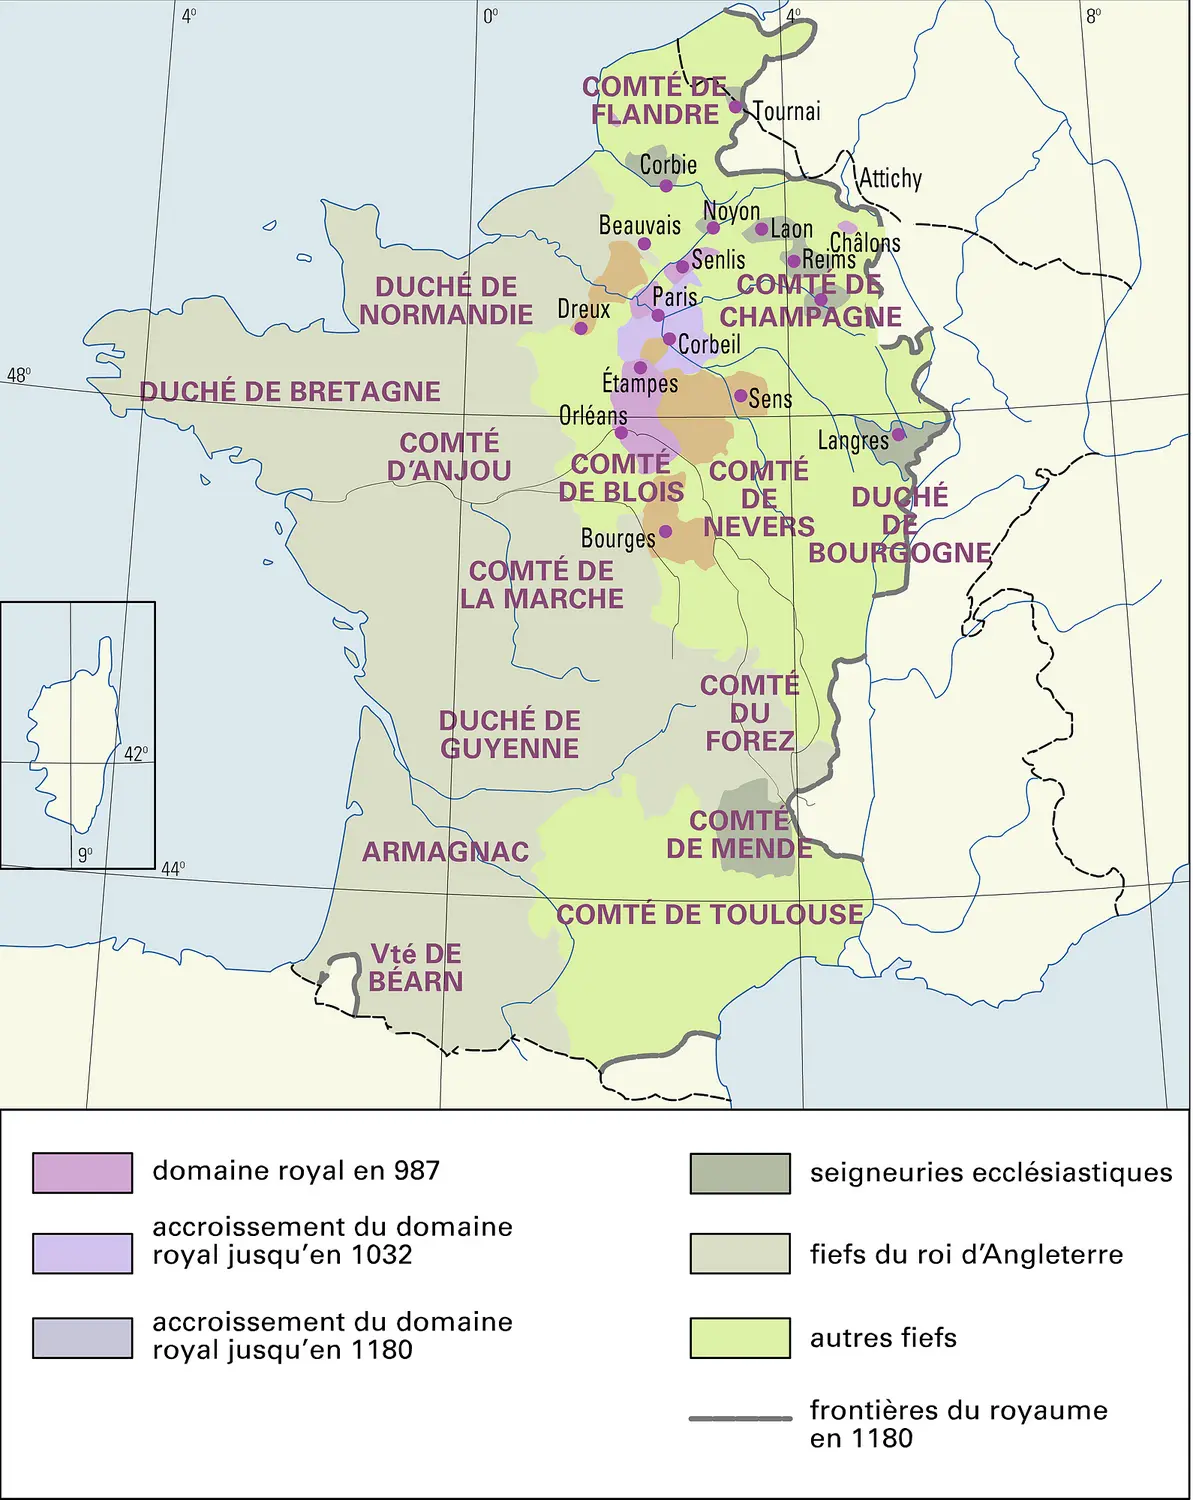 France : formation territoriale, de 987 à 1180